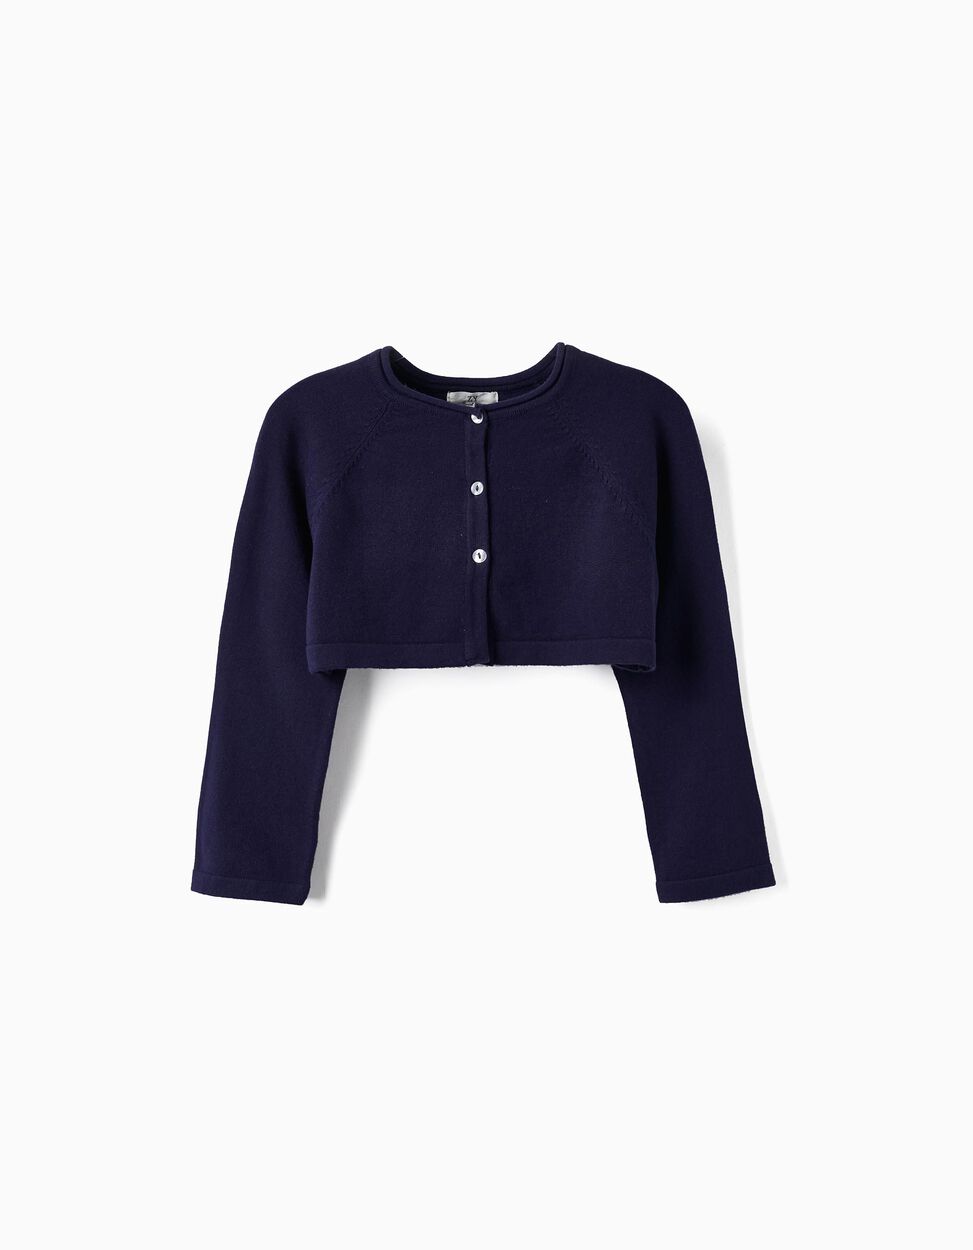 Buy Online Knitted Bolero Jacket for Girls, Dark Blue